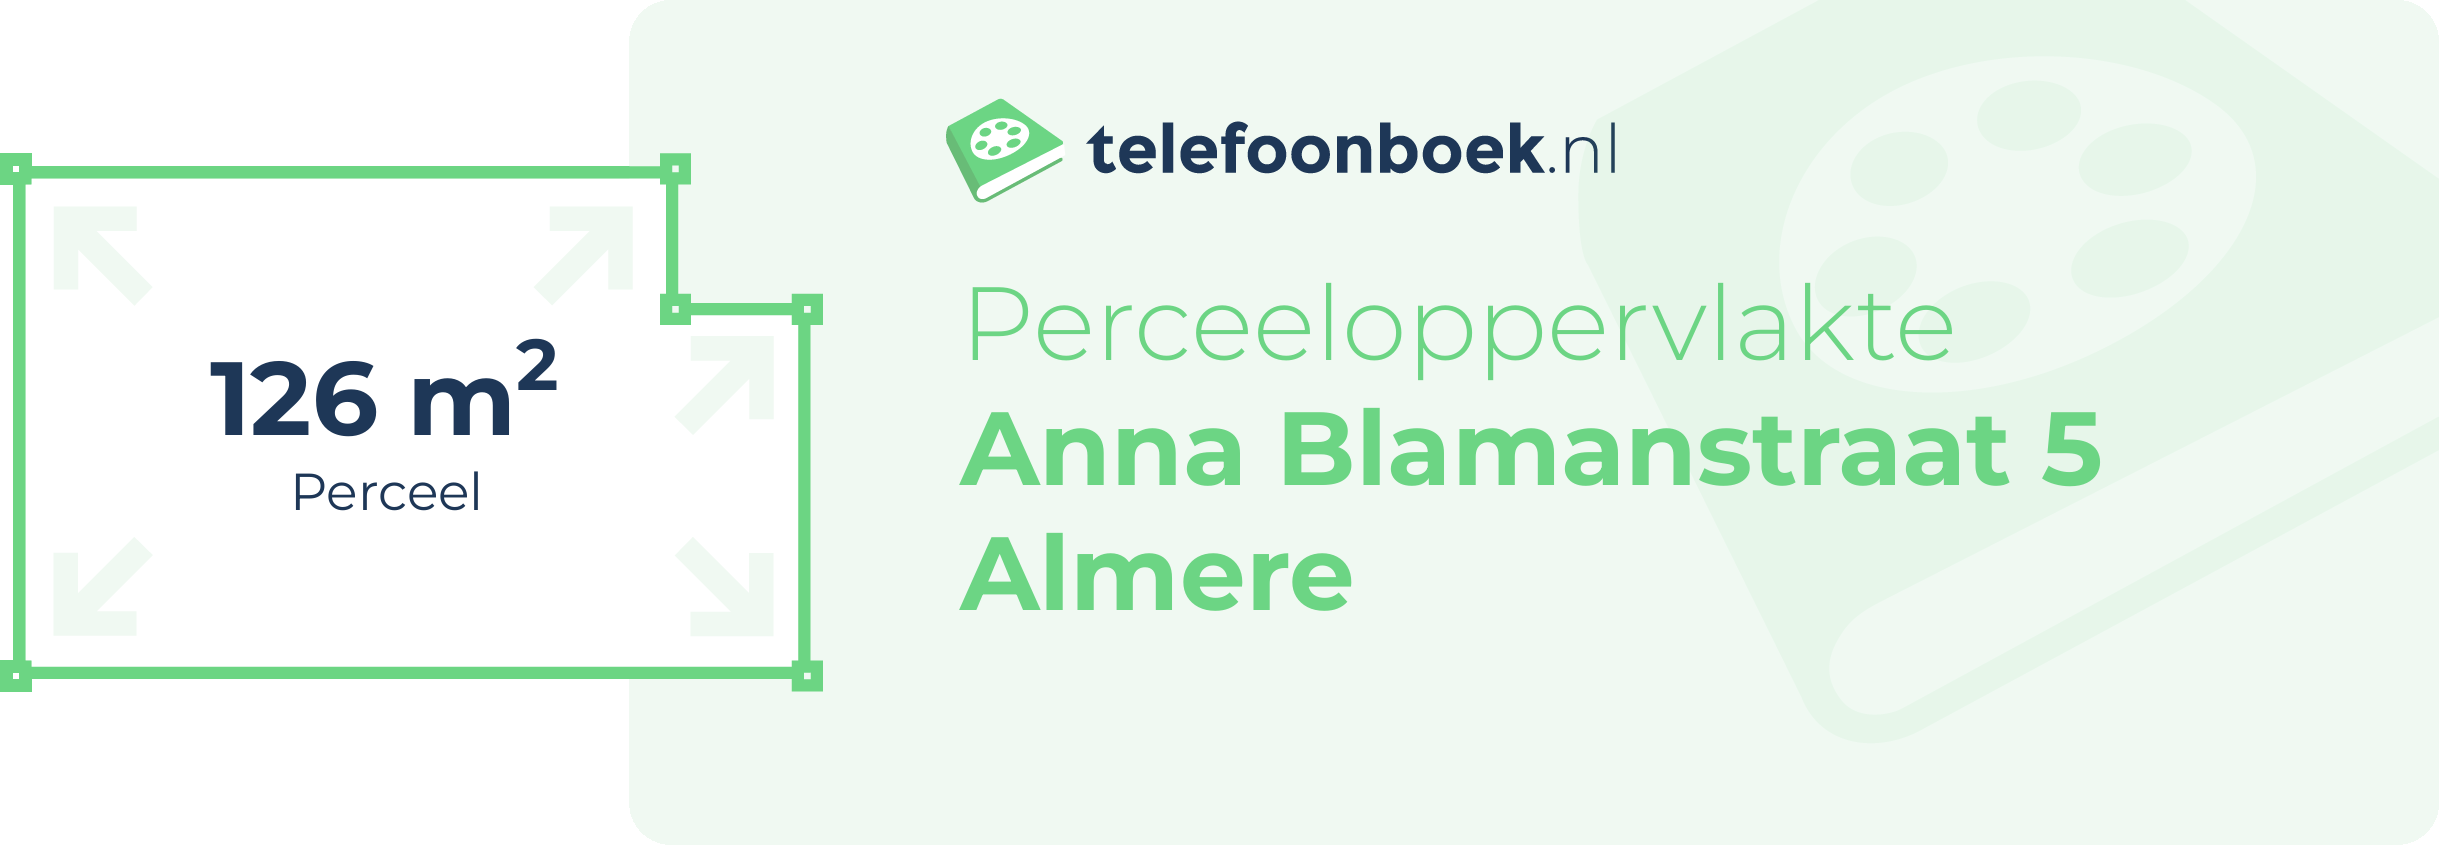 Perceeloppervlakte Anna Blamanstraat 5 Almere